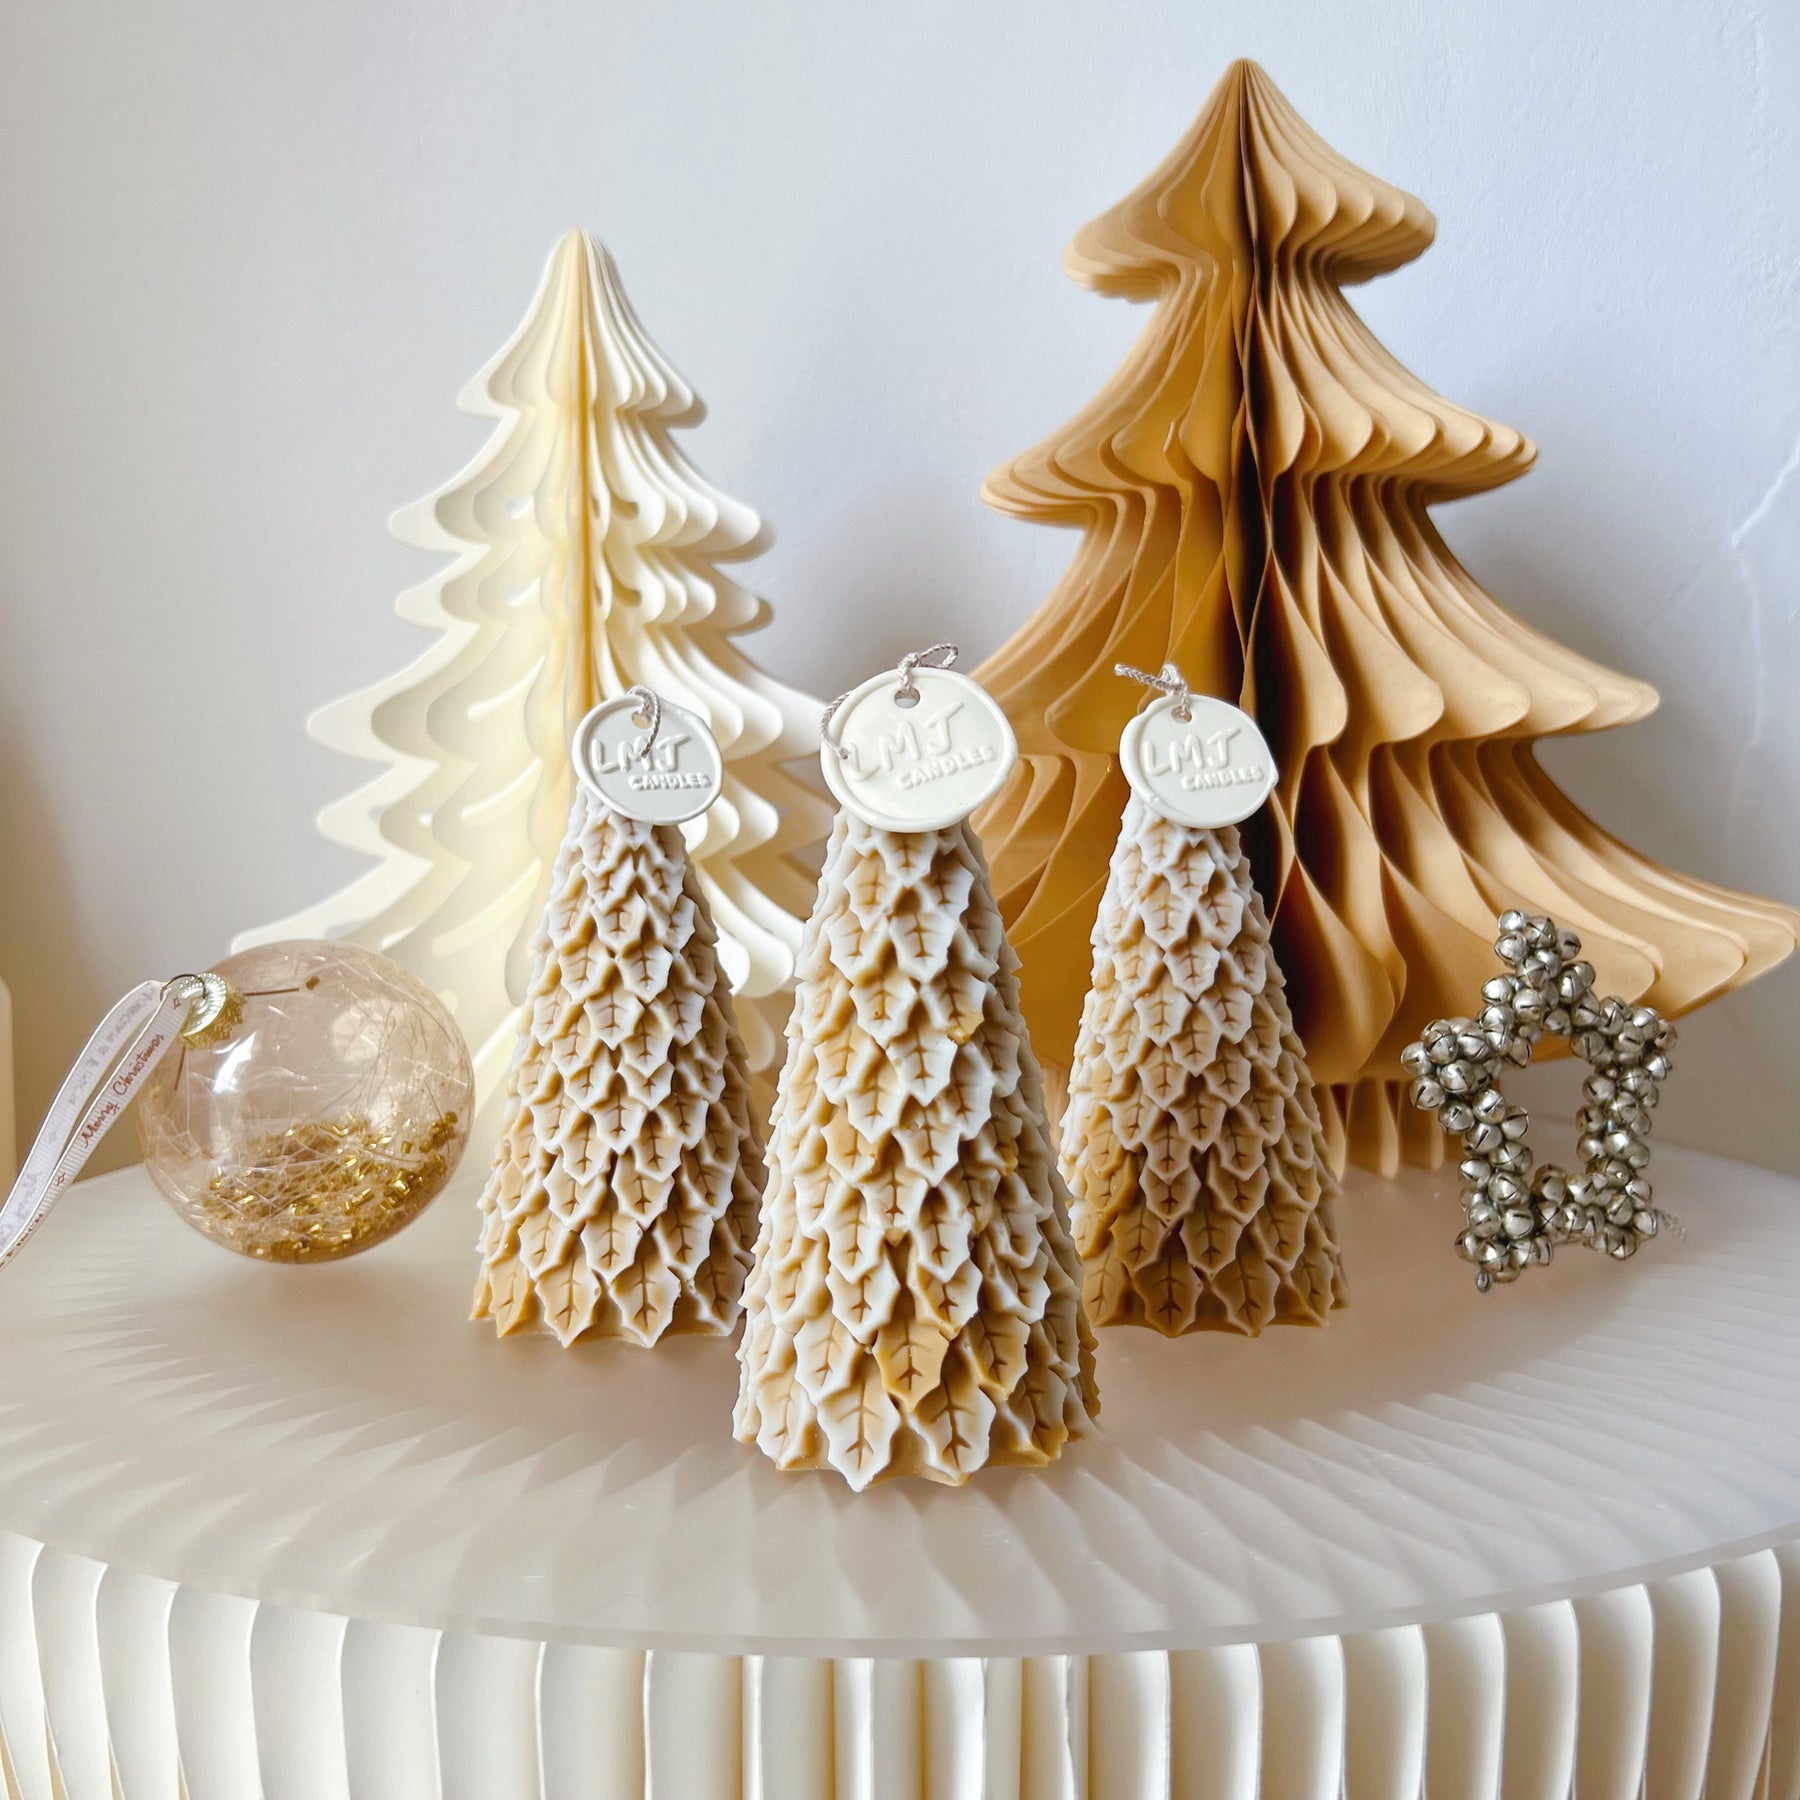 Snowy Christmas Tree Candle - Handmade Xmas Décor - LMJ Candles